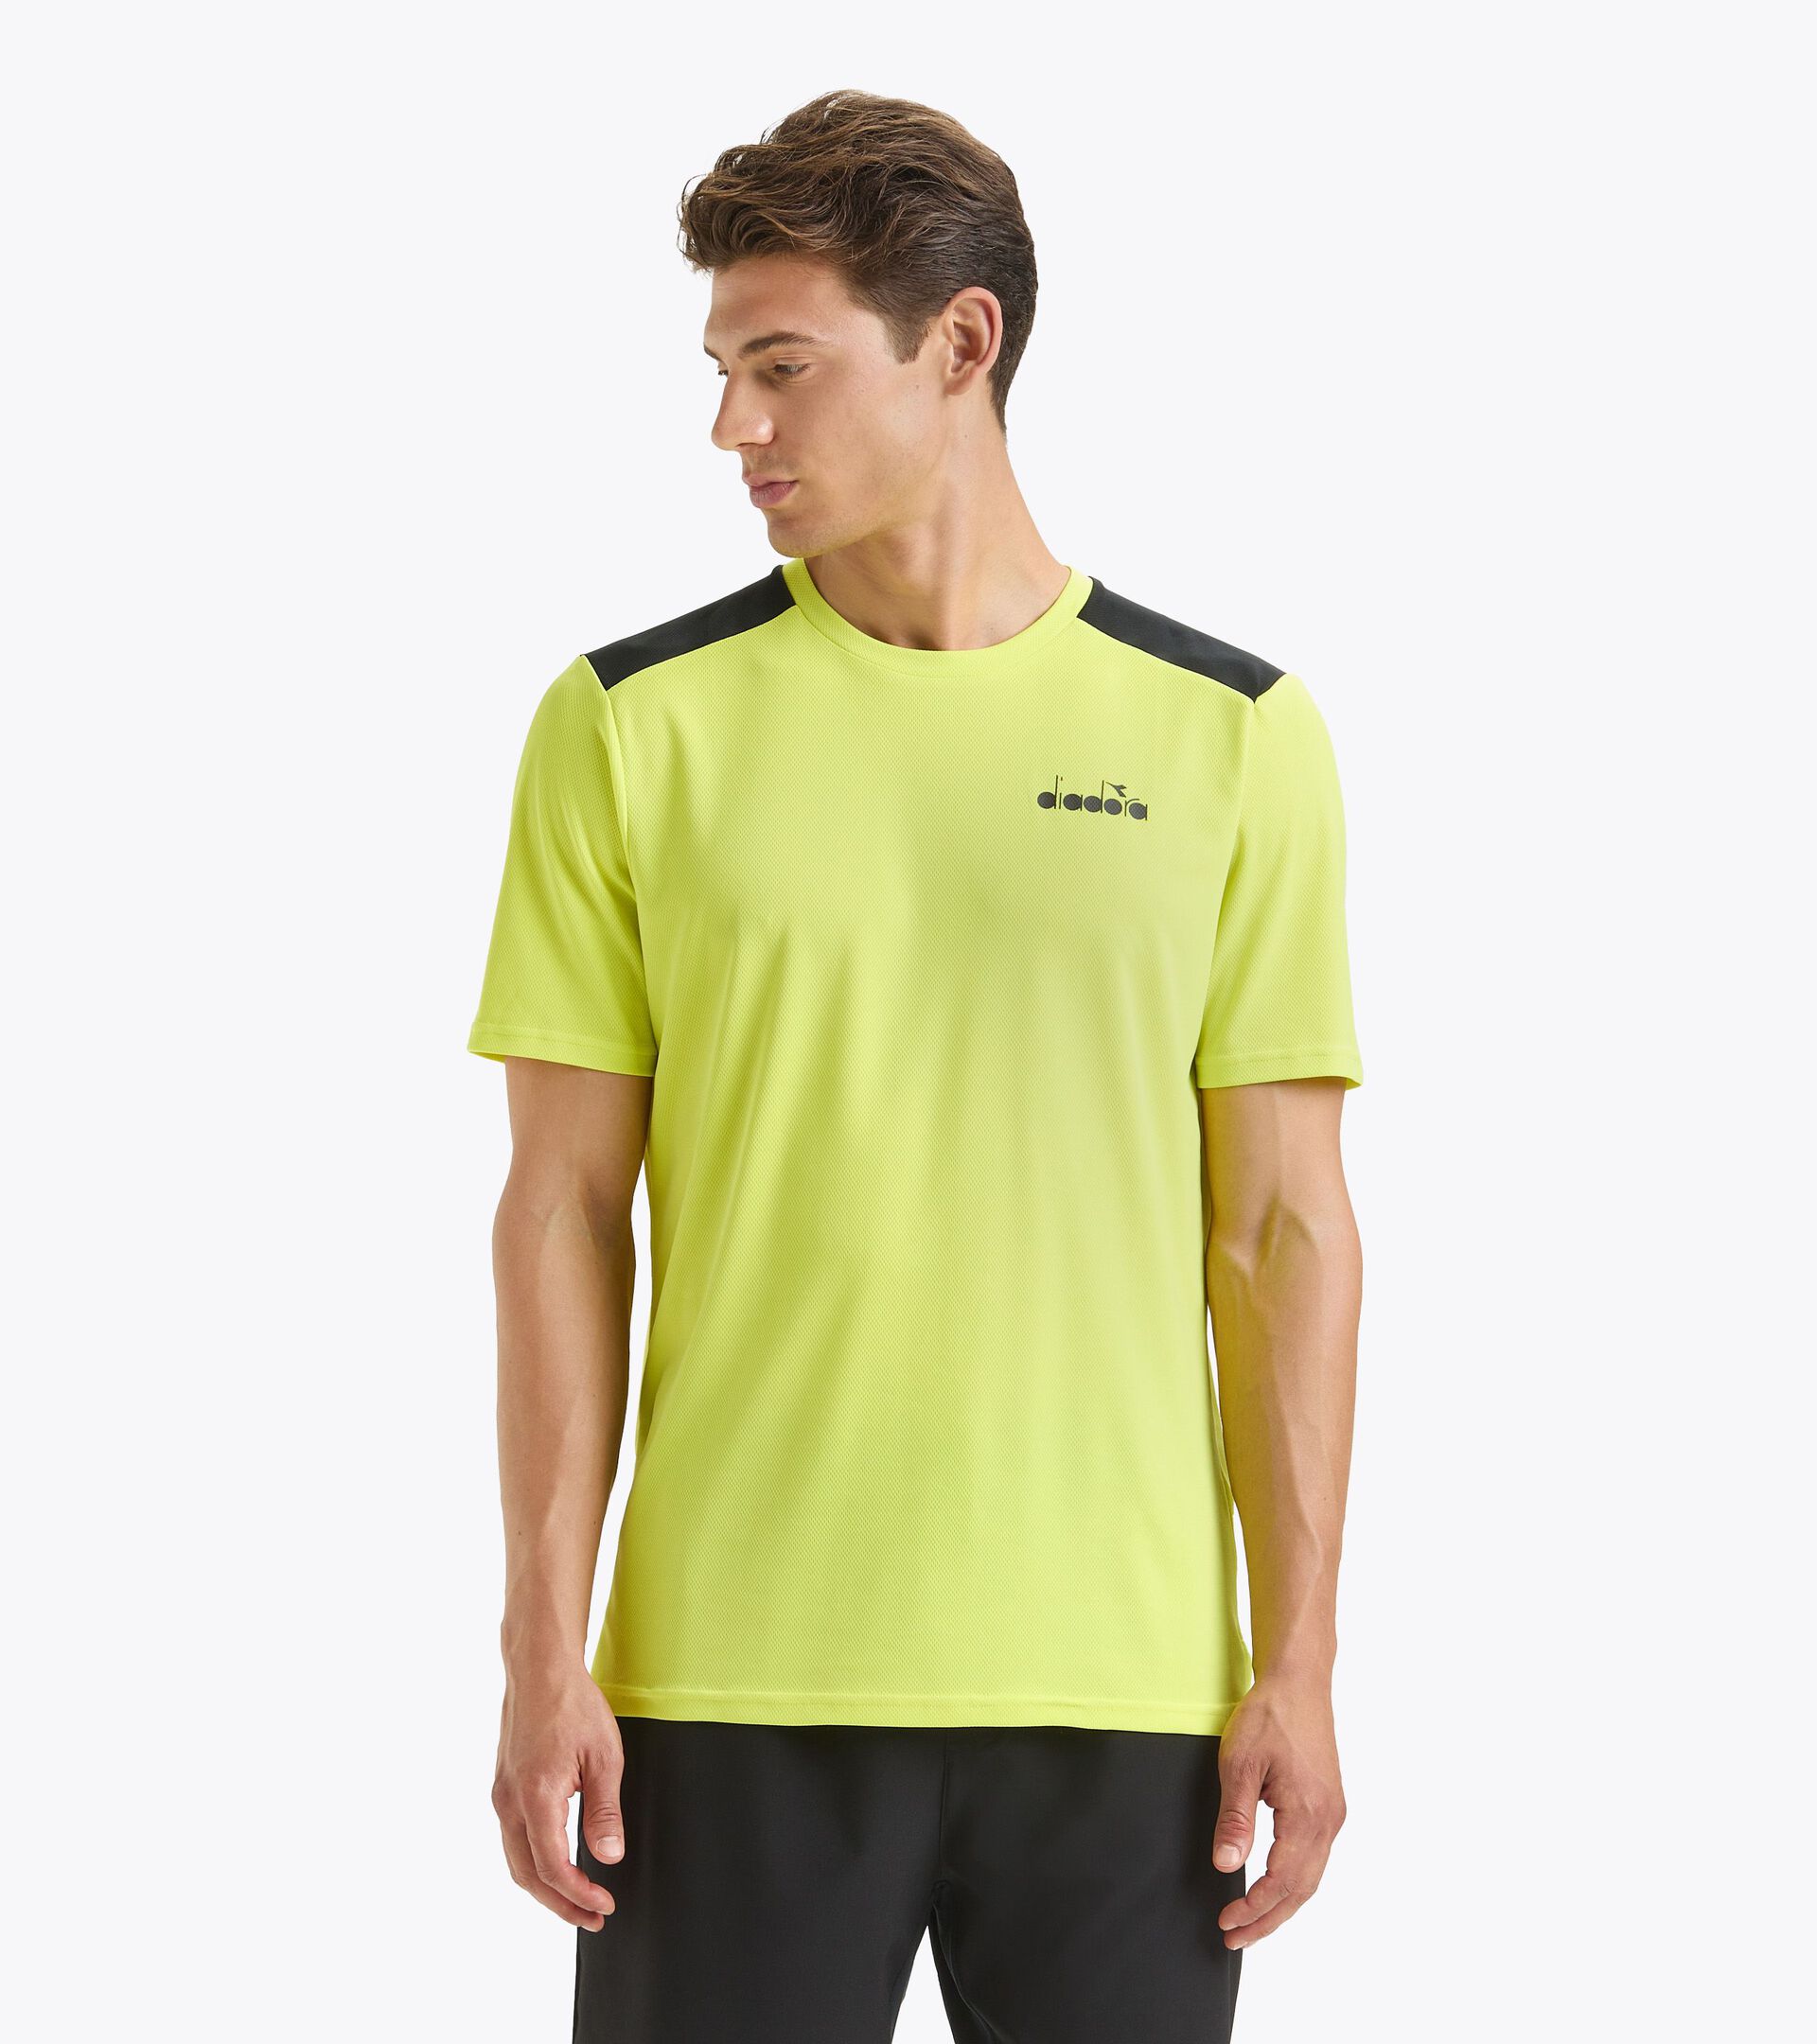 SS CORE T-SHIRT T Camiseta de tenis - Hombre - Tienda en línea Diadora ES